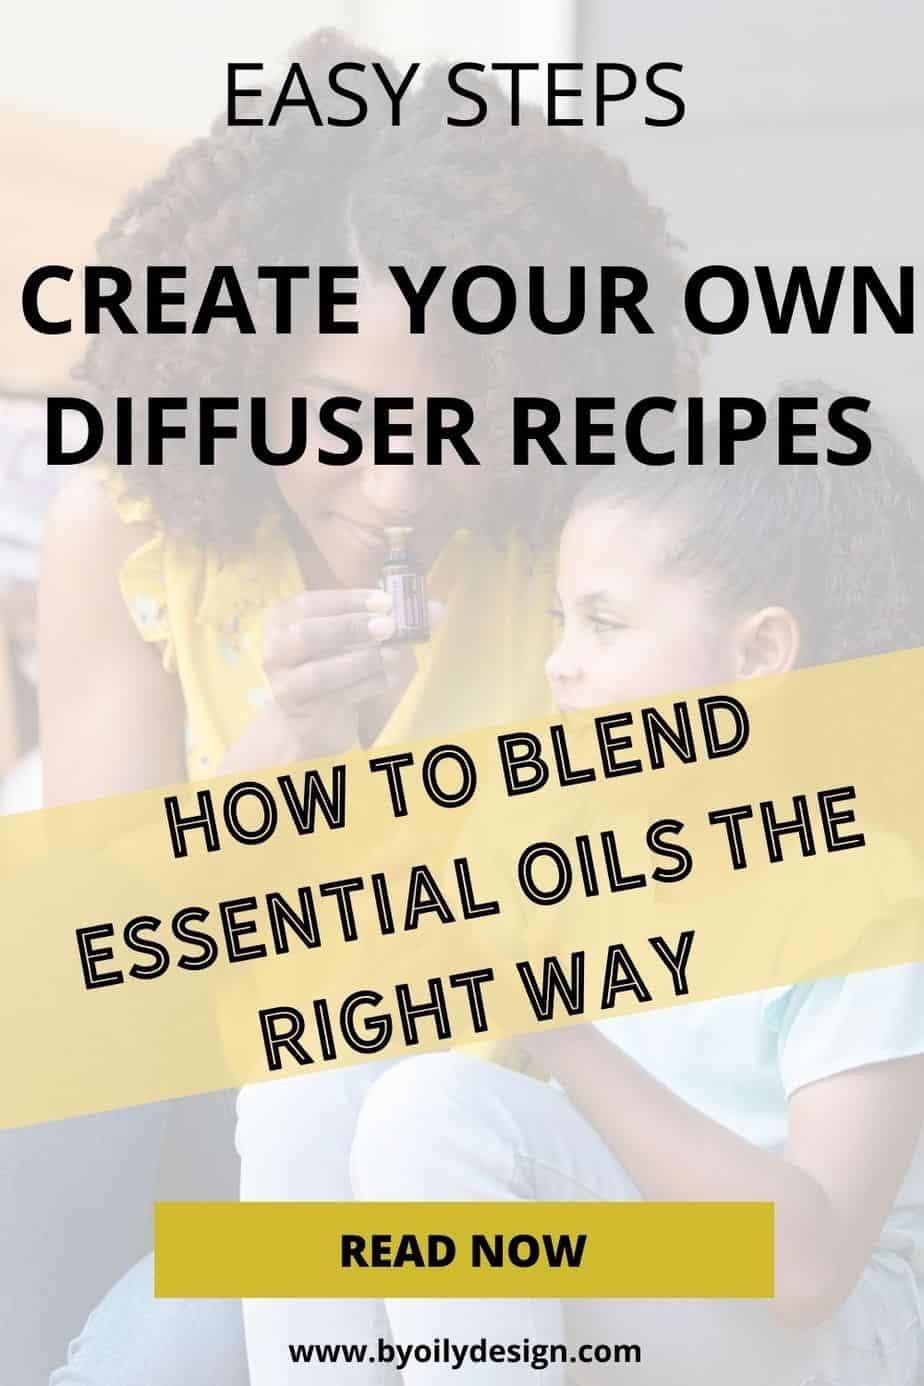 Blend Recipe: 5 drops Balsam Fir, 2 drops Cinnamon Bark, 2 drops Orange   Essential oil diffuser blends recipes, Essential oils, Essential oil blends  recipes